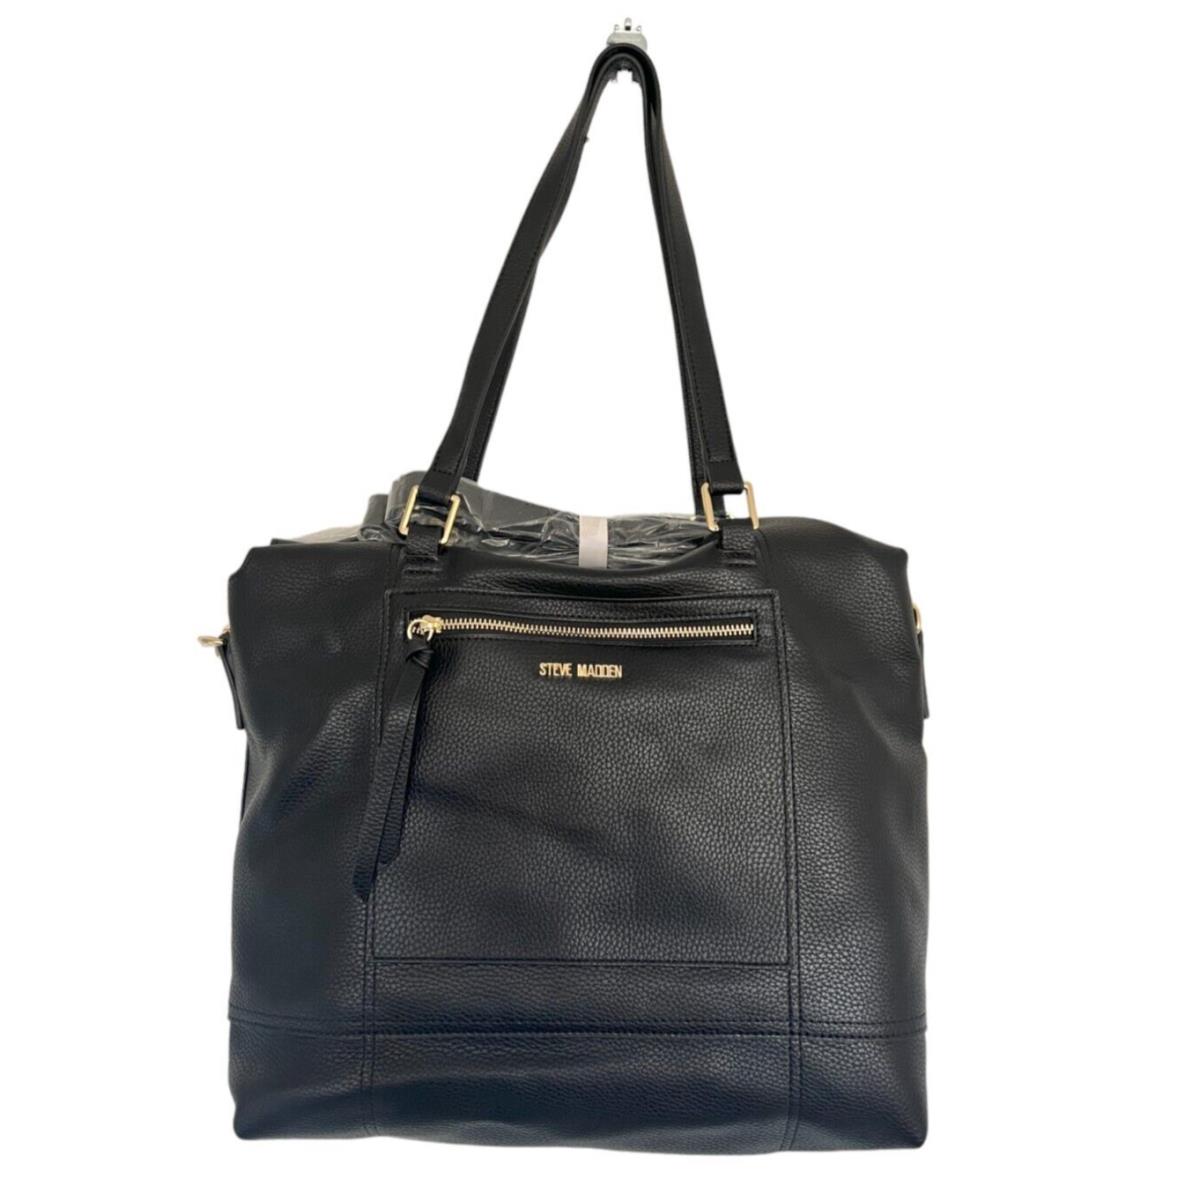 Steve Madden Black Btrevor Tote Bag - Handle/Strap: Black, Hardware: Silver, Exterior: Black